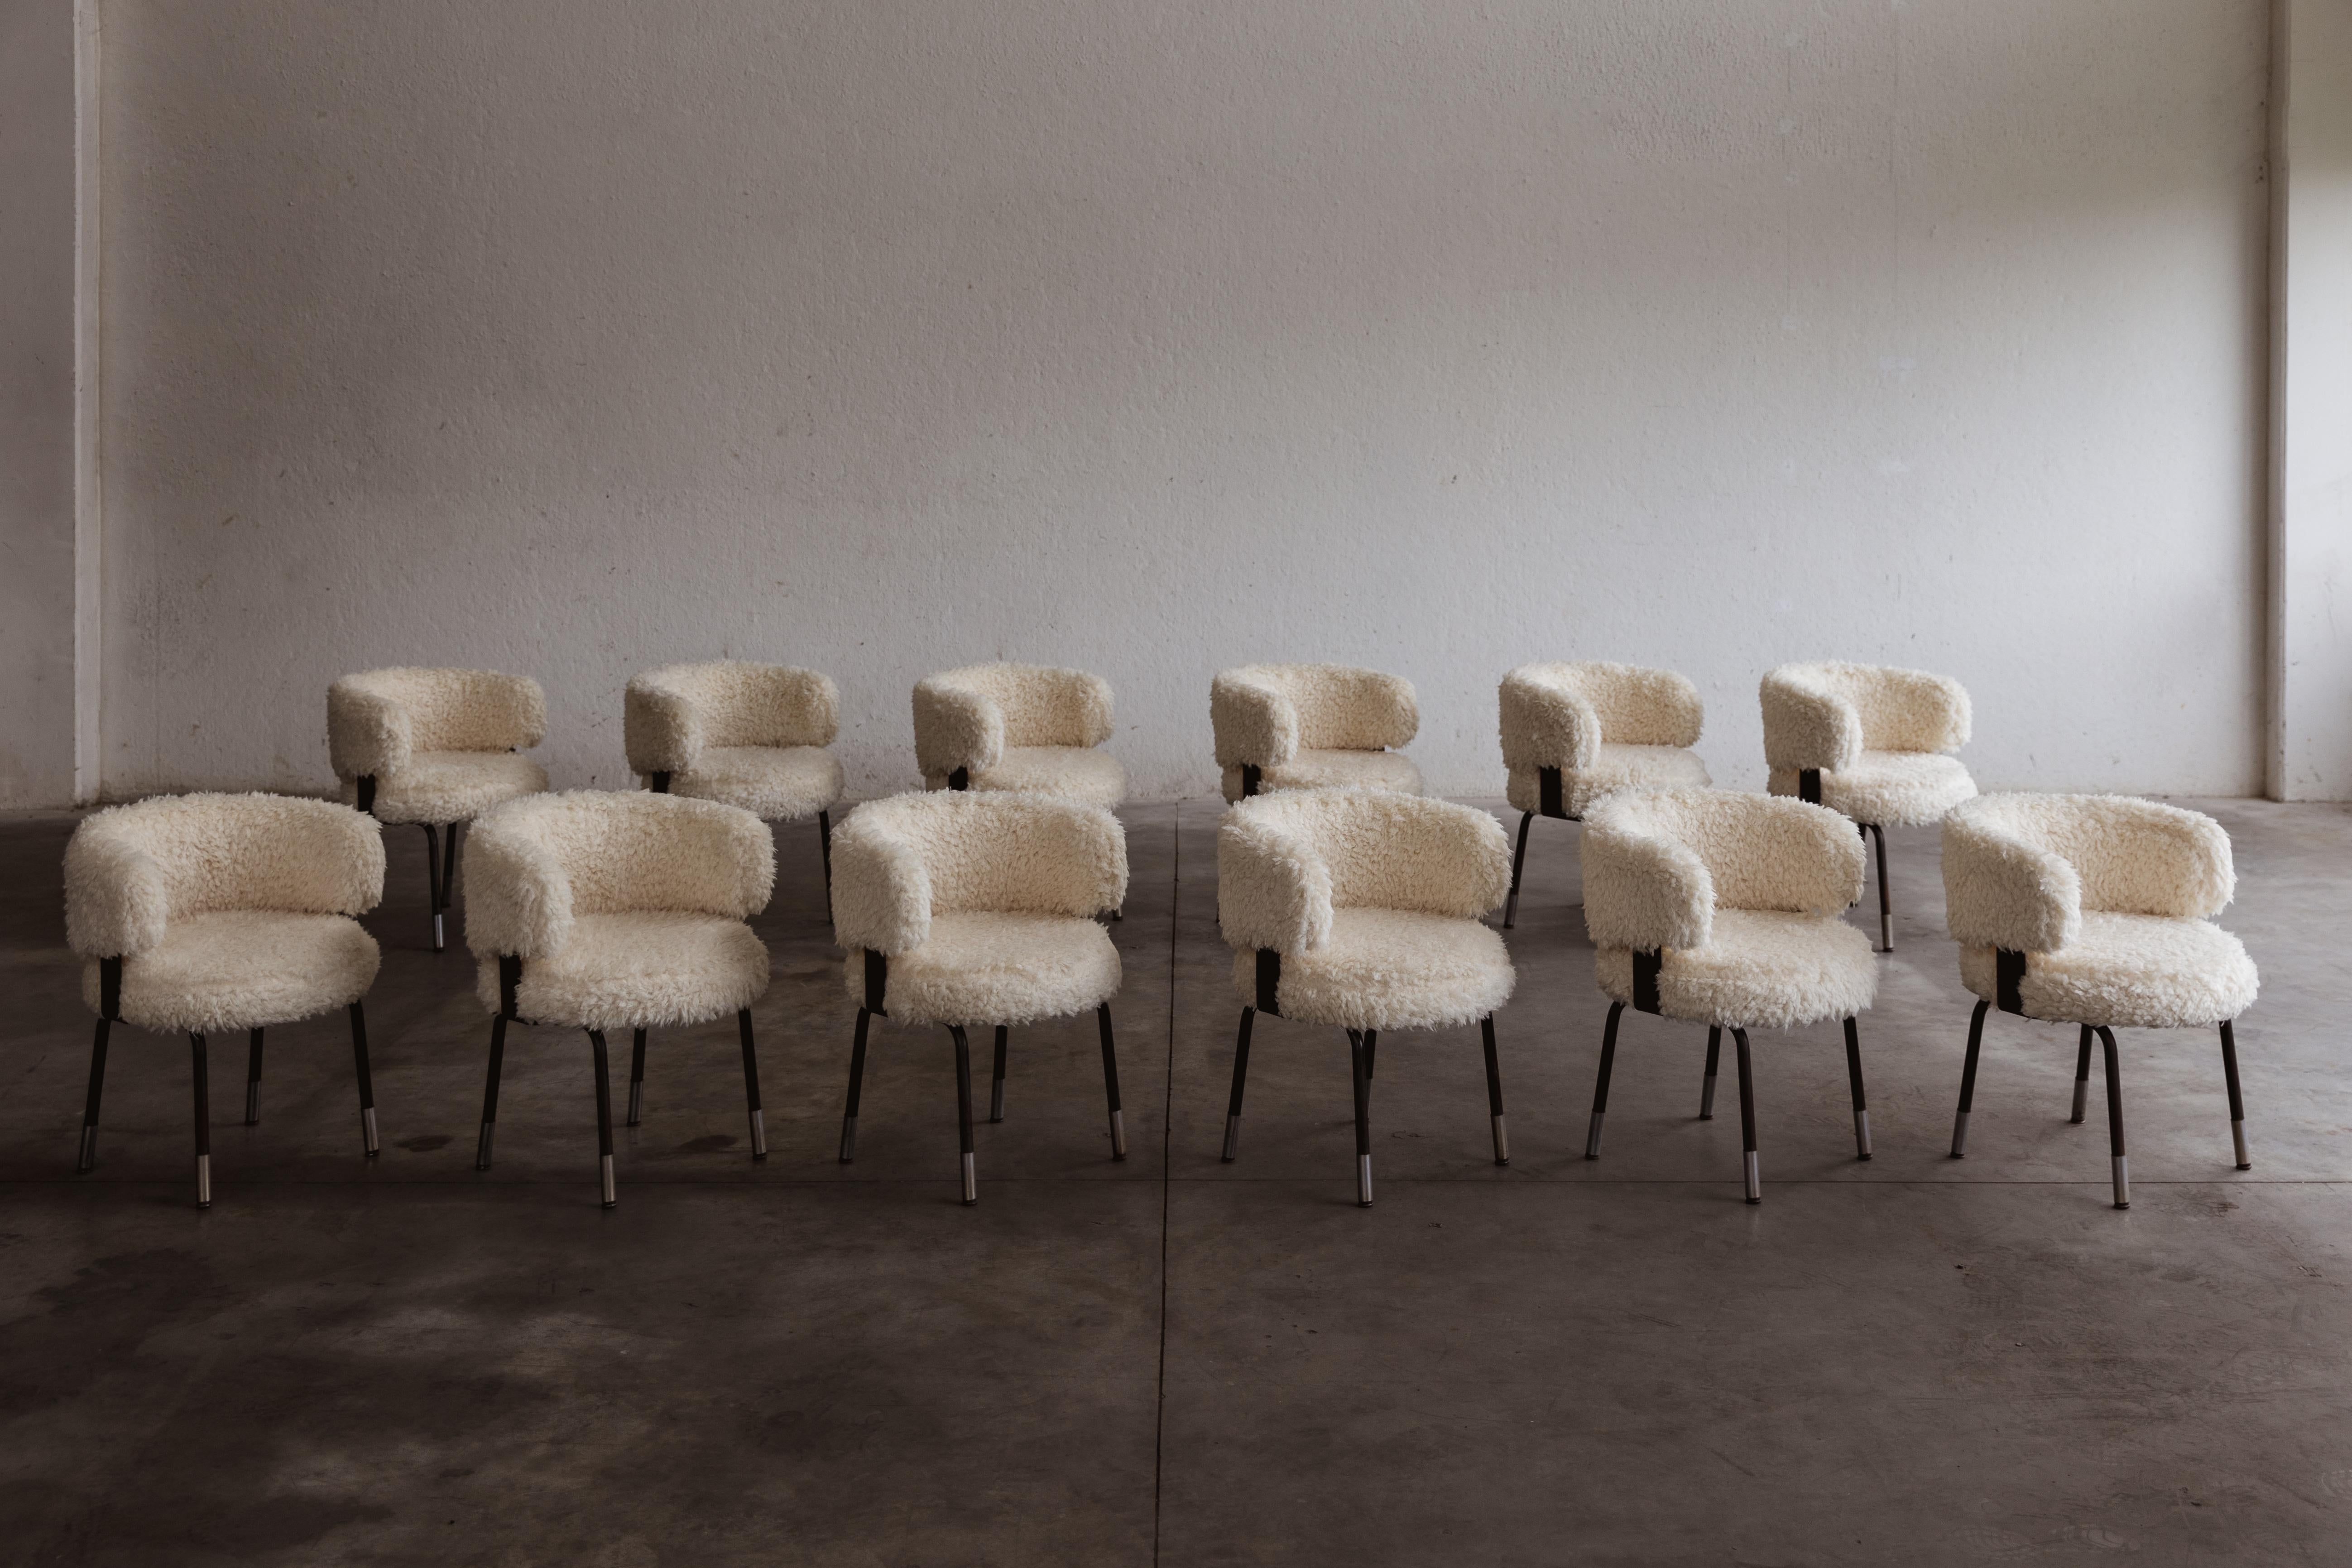 Chaises de salle à manger Gianni Moscatelli pour Formanova, fausse fourrure et fer, Italie, 1968, ensemble de douze.

Ces chaises sont des objets intemporels conçus par Gianni Moscatelli pour Formanova dans les années 1960. Son design présente des